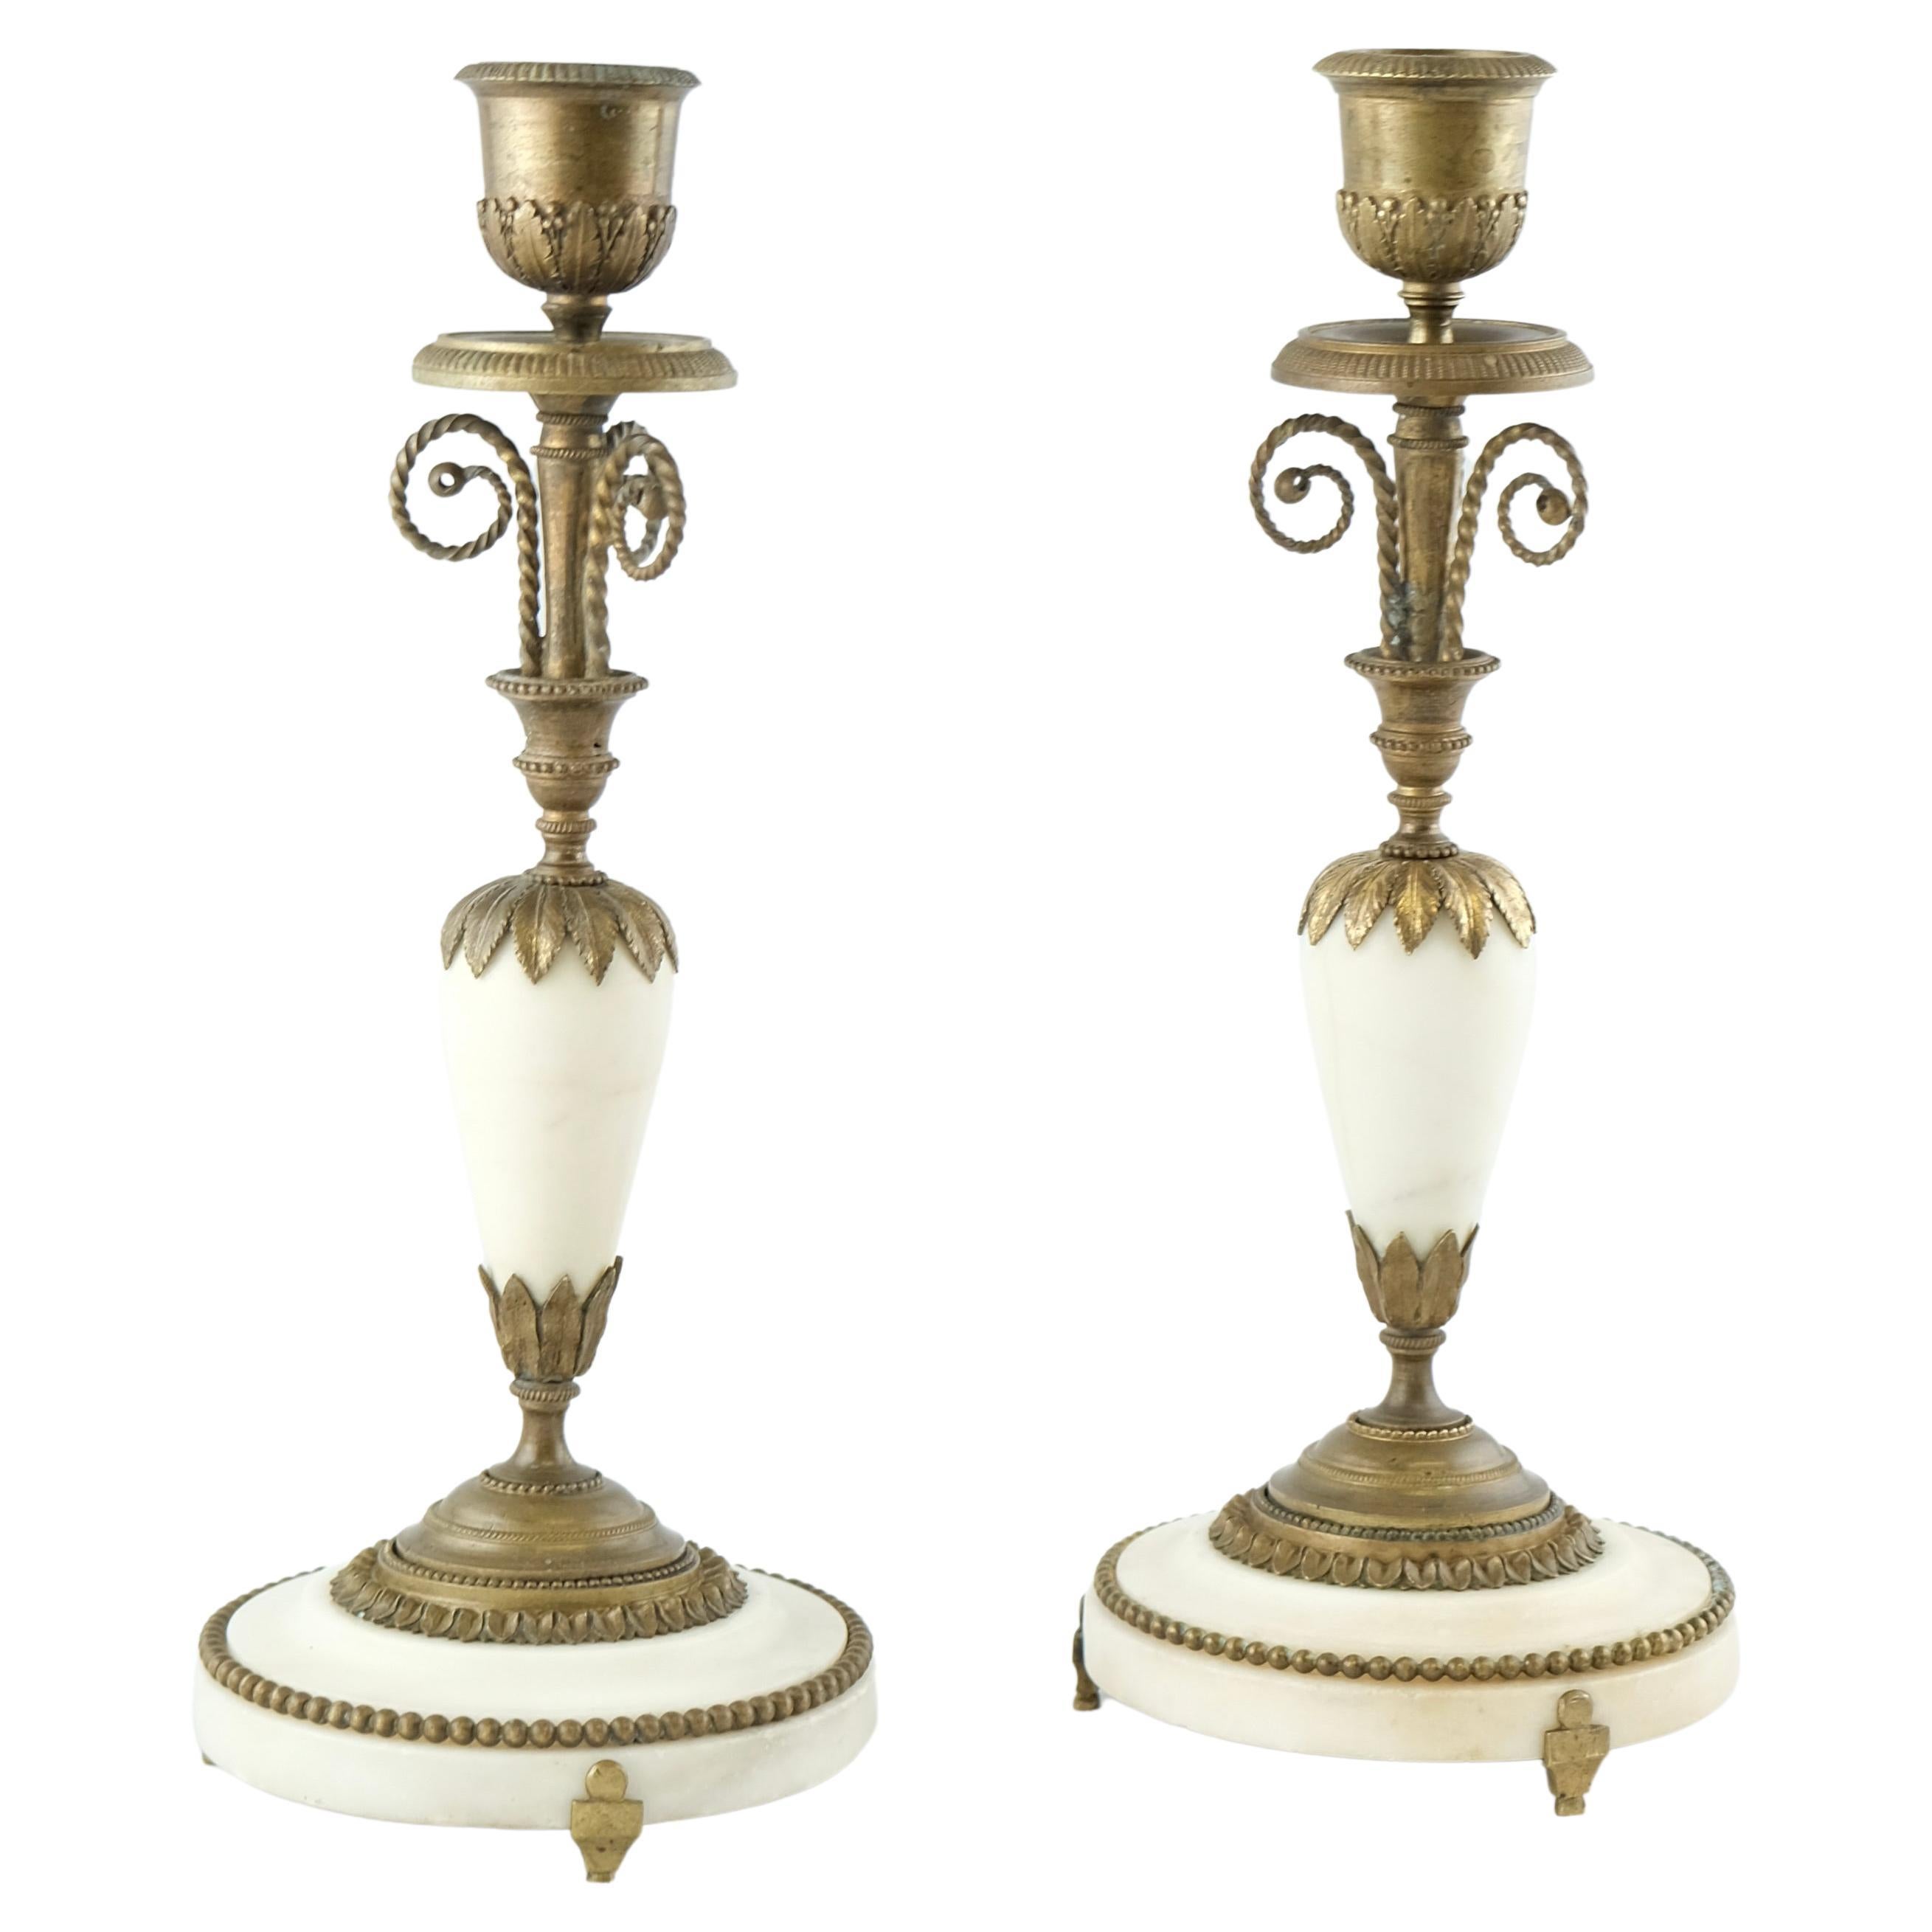 Paire de chandeliers de style Directoire français fabriqués dans les années 1790.